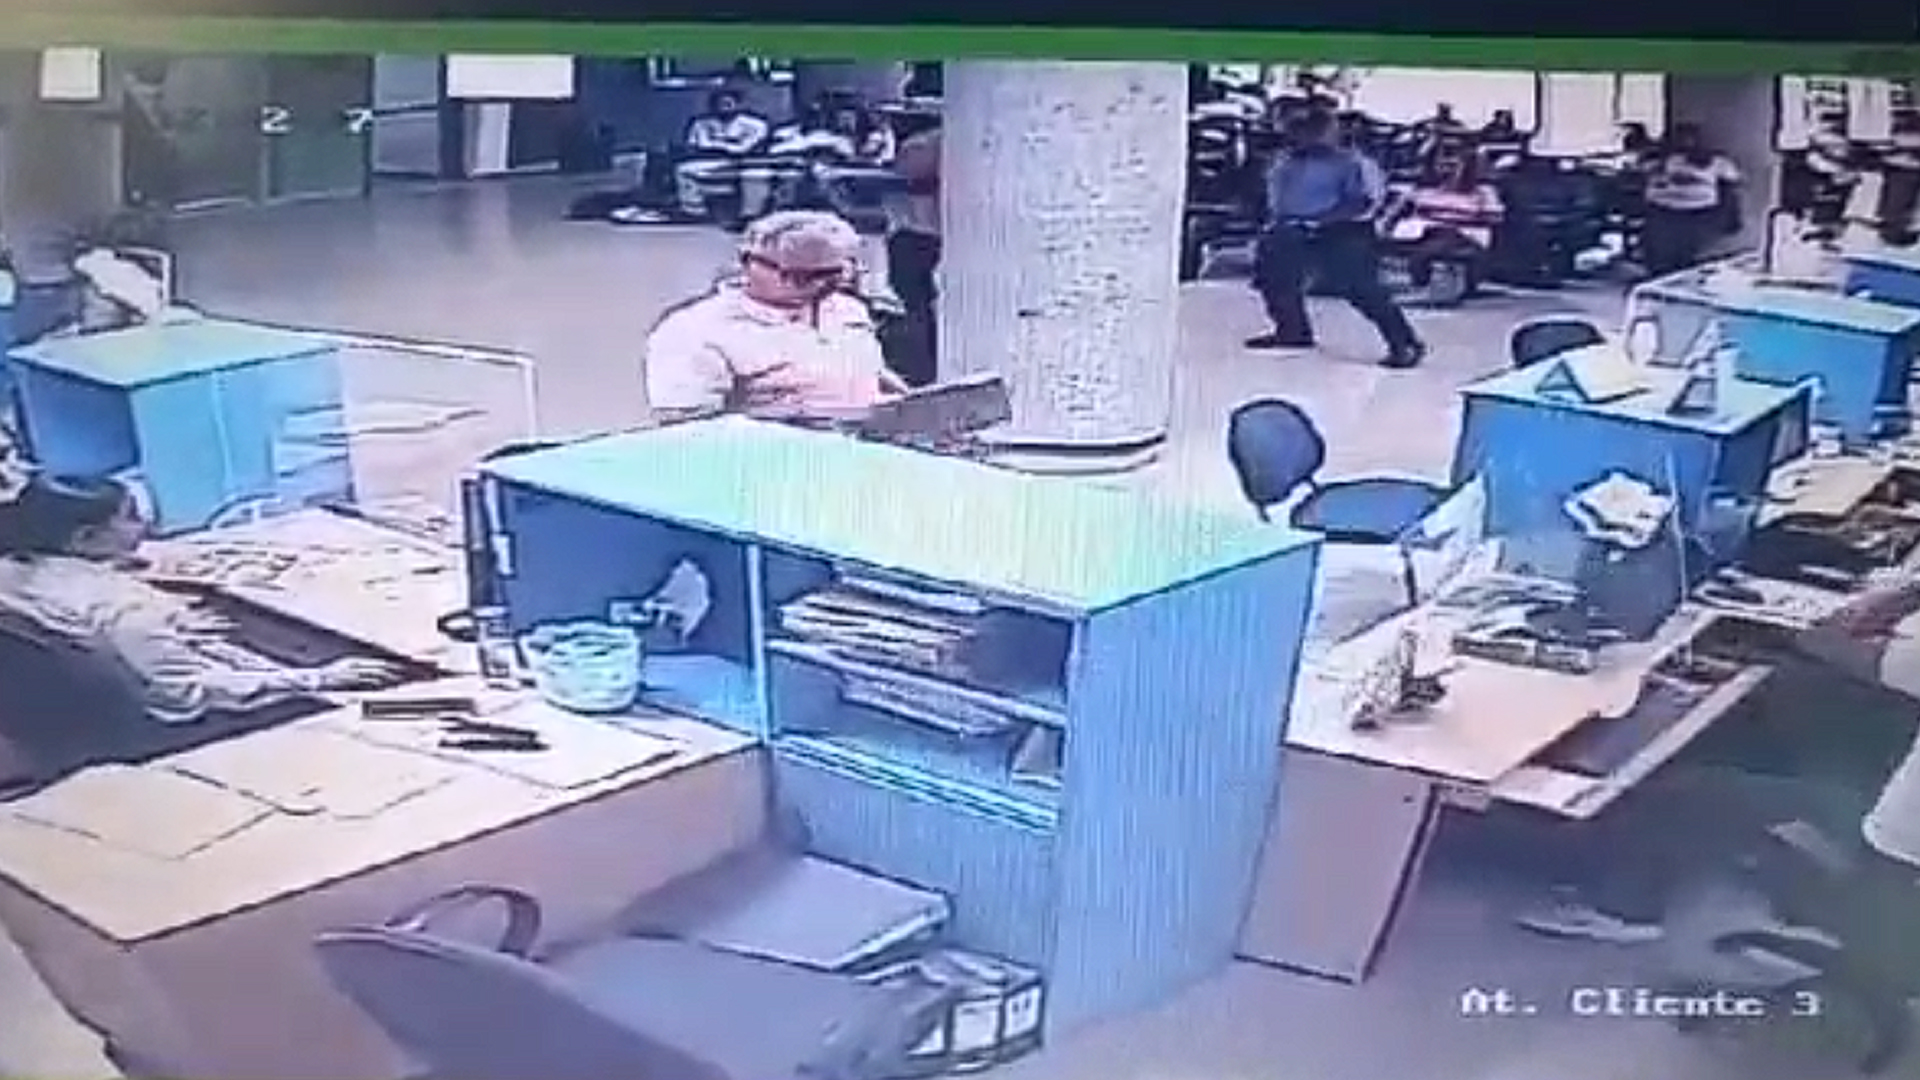 El momento en el que un hombre golpea con su pierna al cubículo de una trabajadora